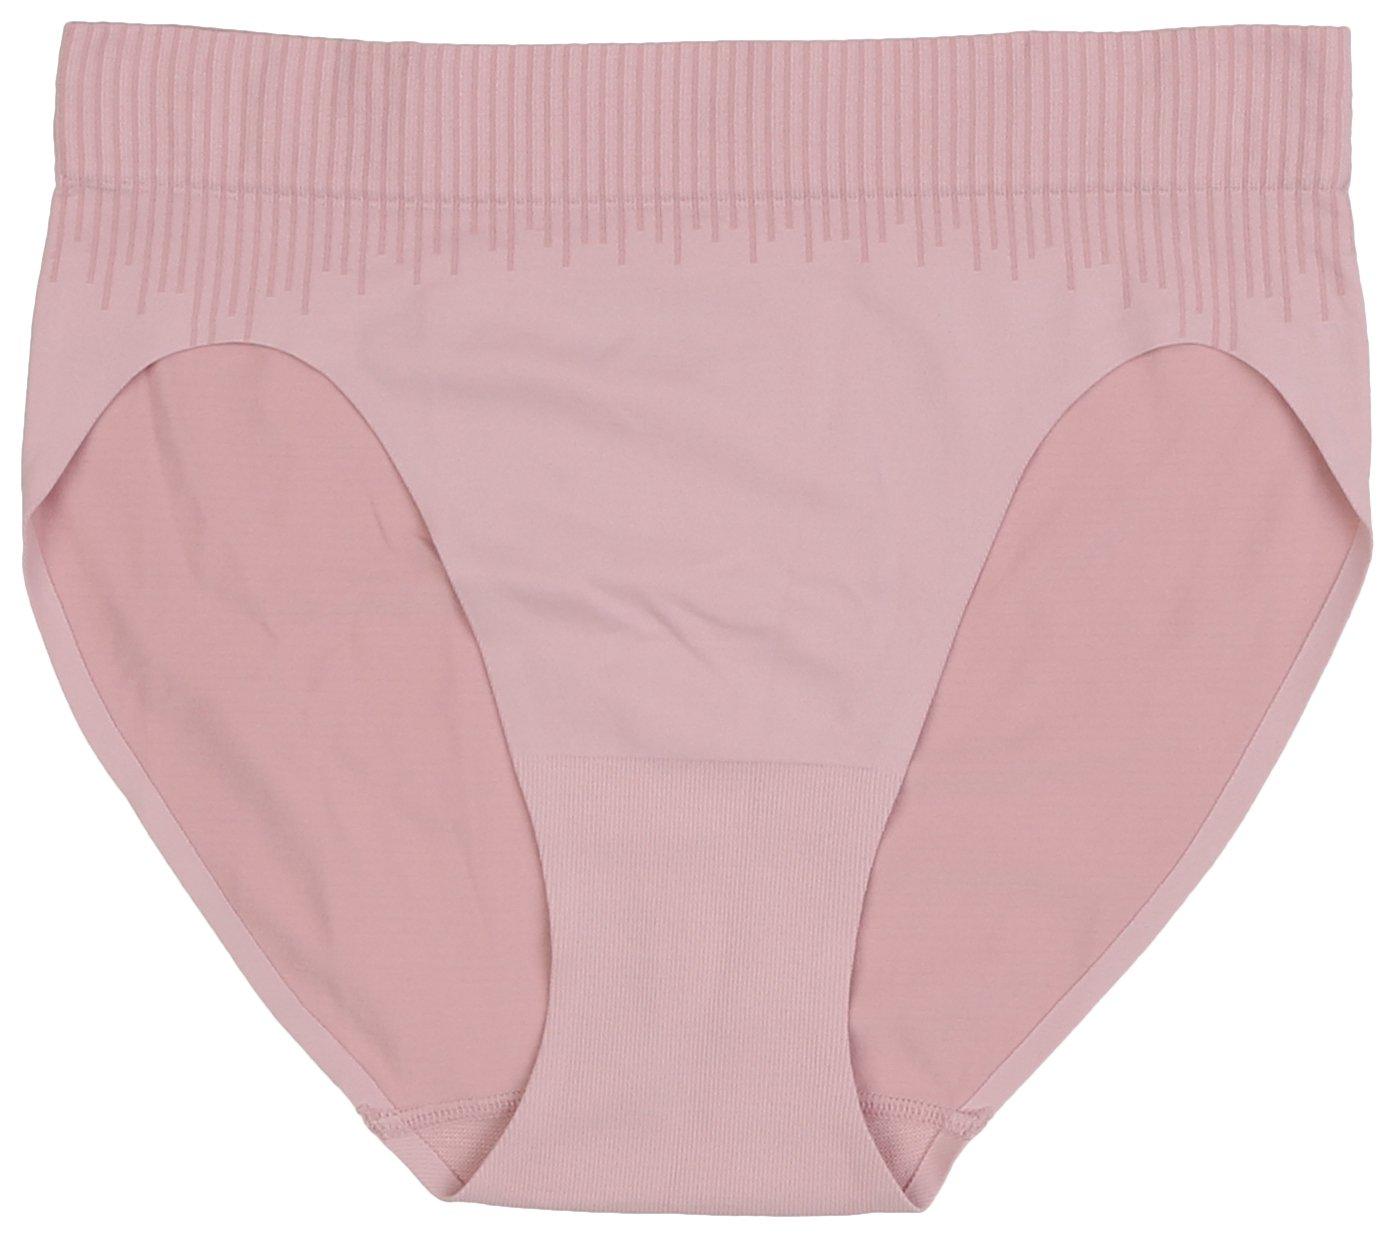 Bali Comfort Revolution Seamless Hi-Cut Brief Panties MSHC